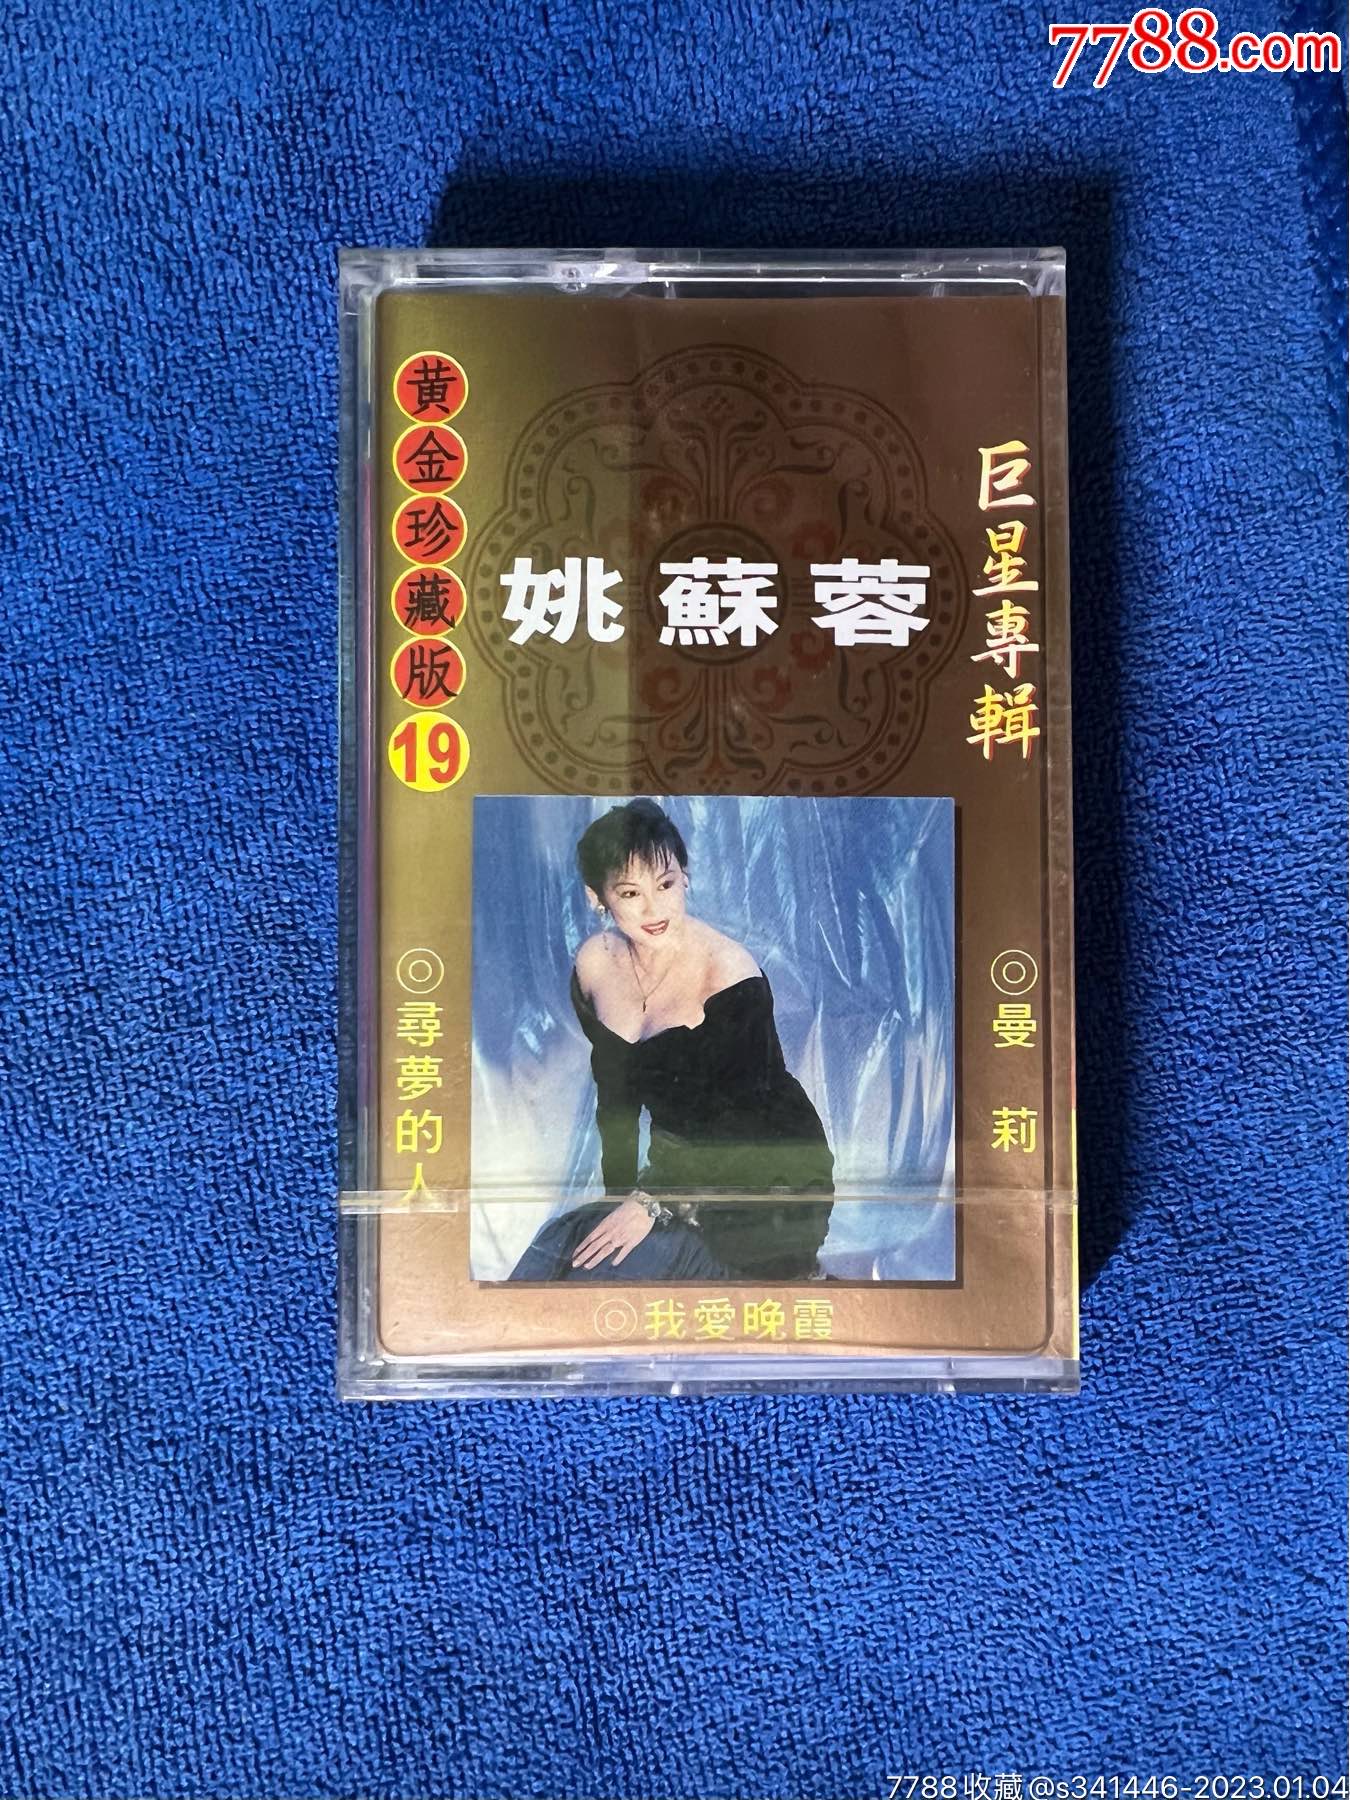 磁带 正版 黄金萨克斯3 高格调 高品位 1993年老版磁带 未拆封-淘宝网